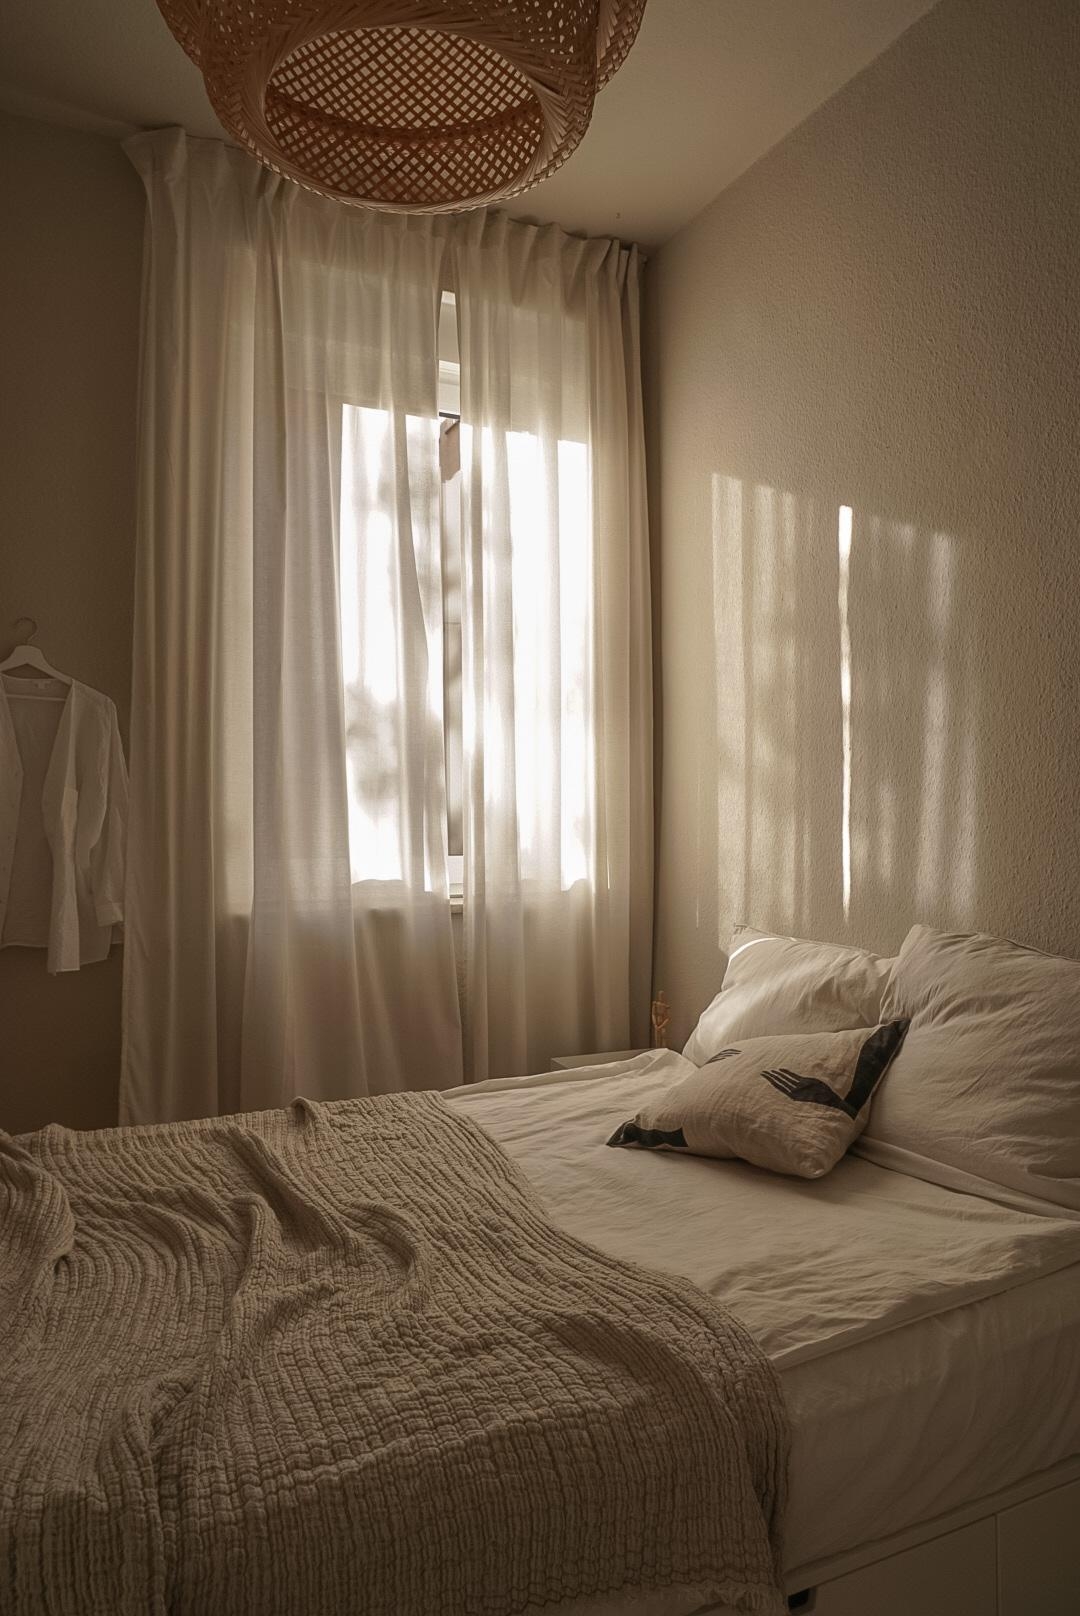 An so einem Tag möchte man diesen am liebsten komplett im #Bett verbringen. 
#schlafzimmer #lichtspiel #bedroom